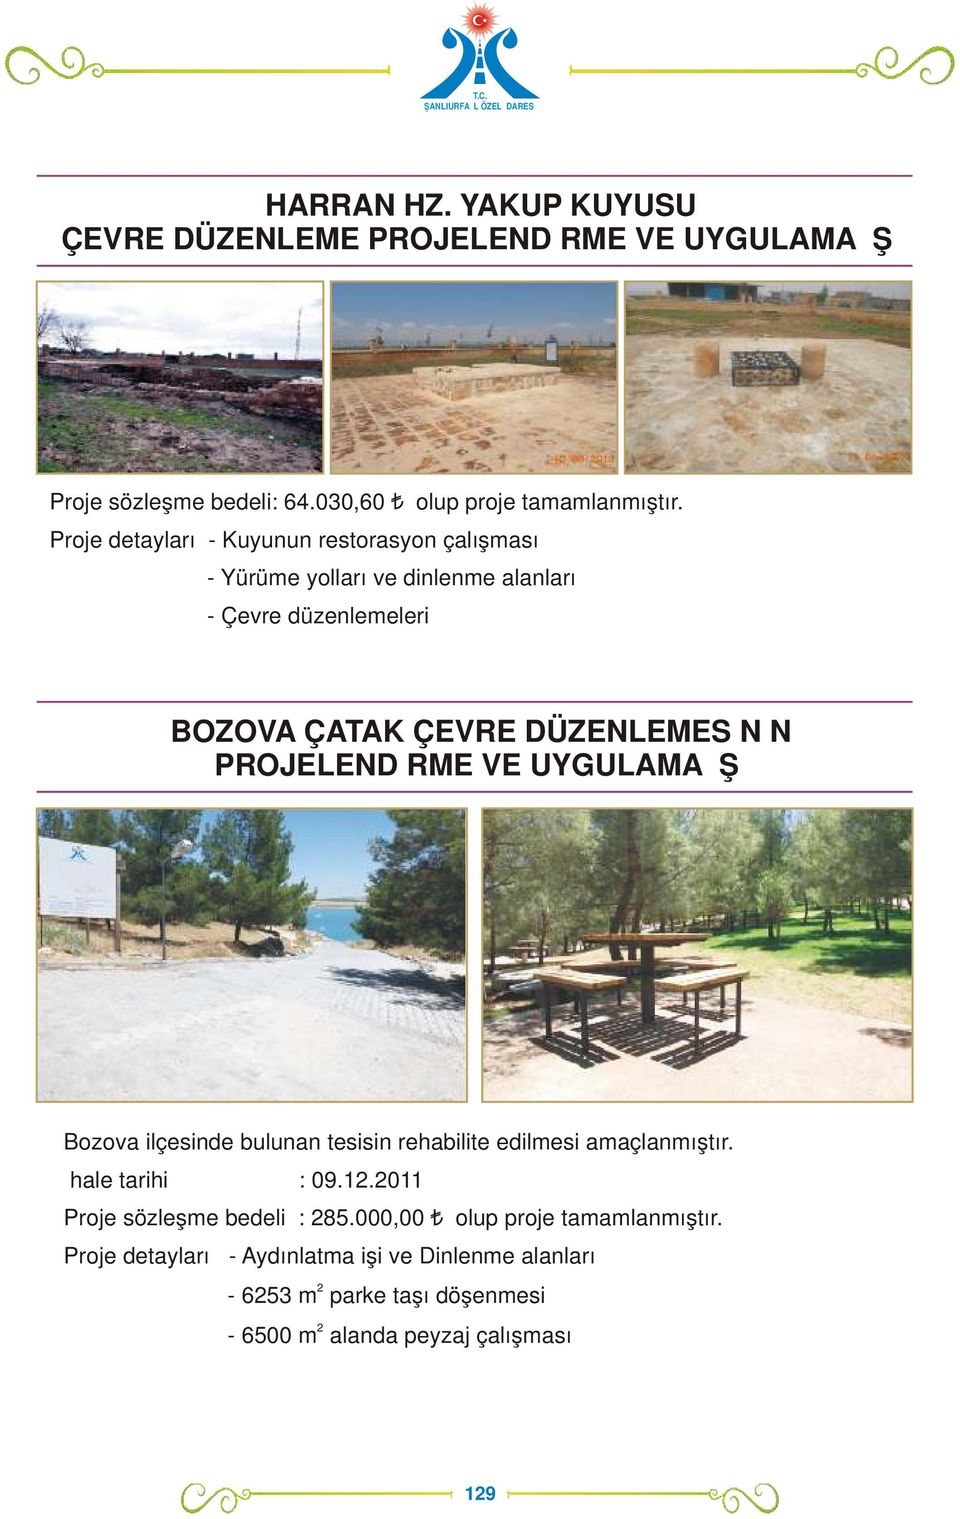 PROJELENDİRME VE UYGULAMA İŞİ Bozova ilçesinde bulunan tesisin rehabilite edilmesi amaçlanmıştır. İhale tarihi : 09.1.